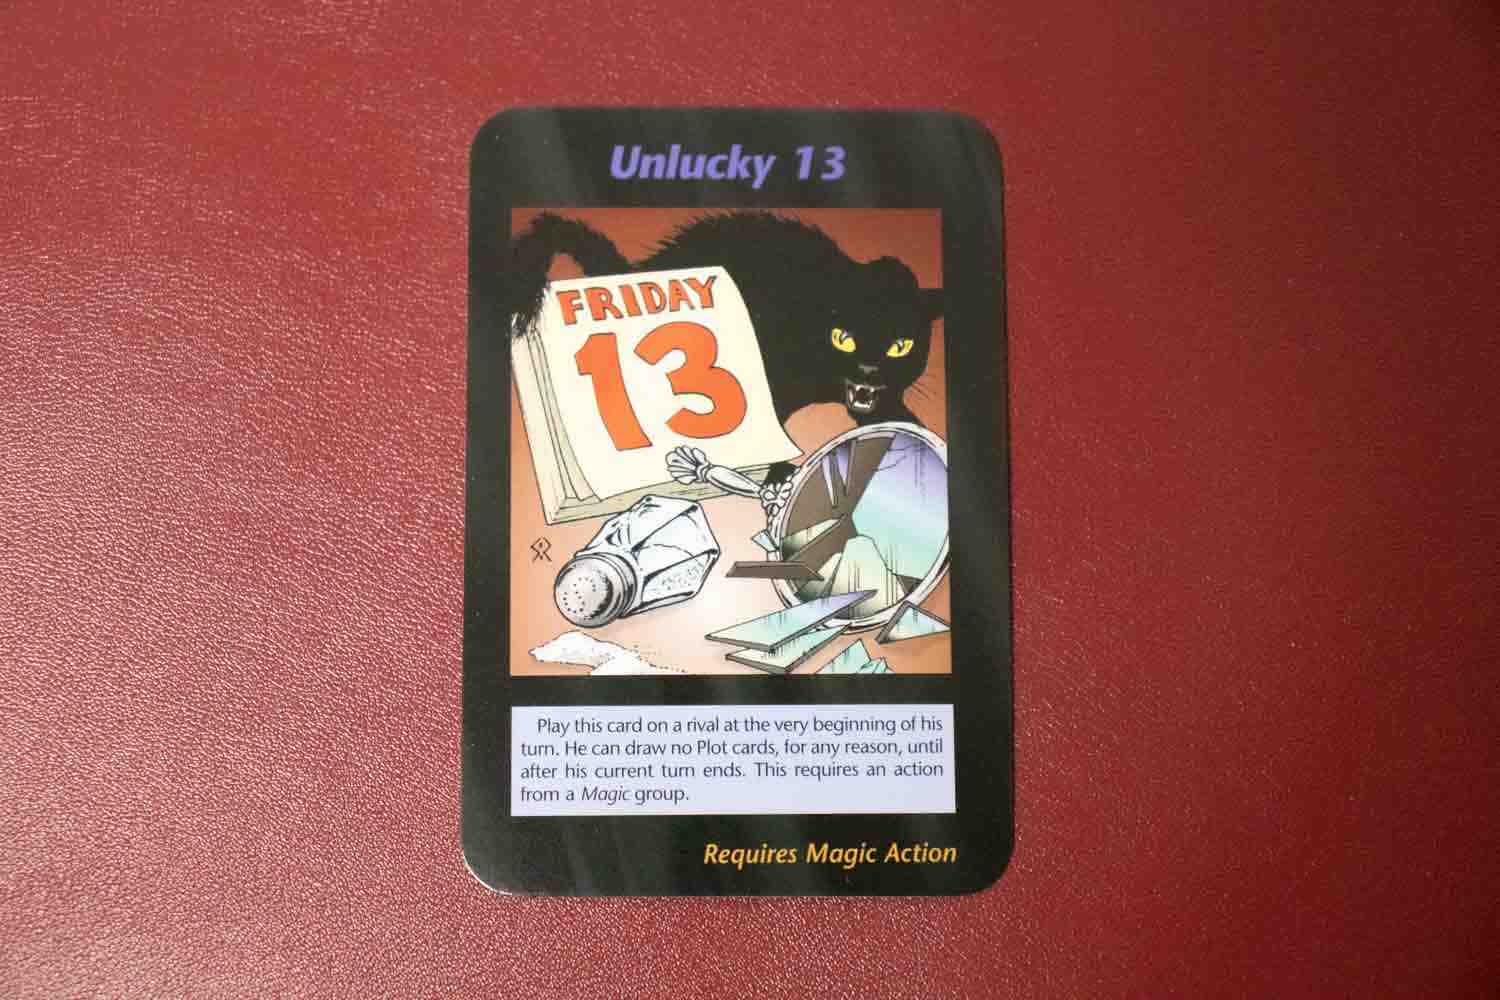 【イルミナティカード】Unlucky 13の詳細と都市伝説まとめ【悪魔の数字】